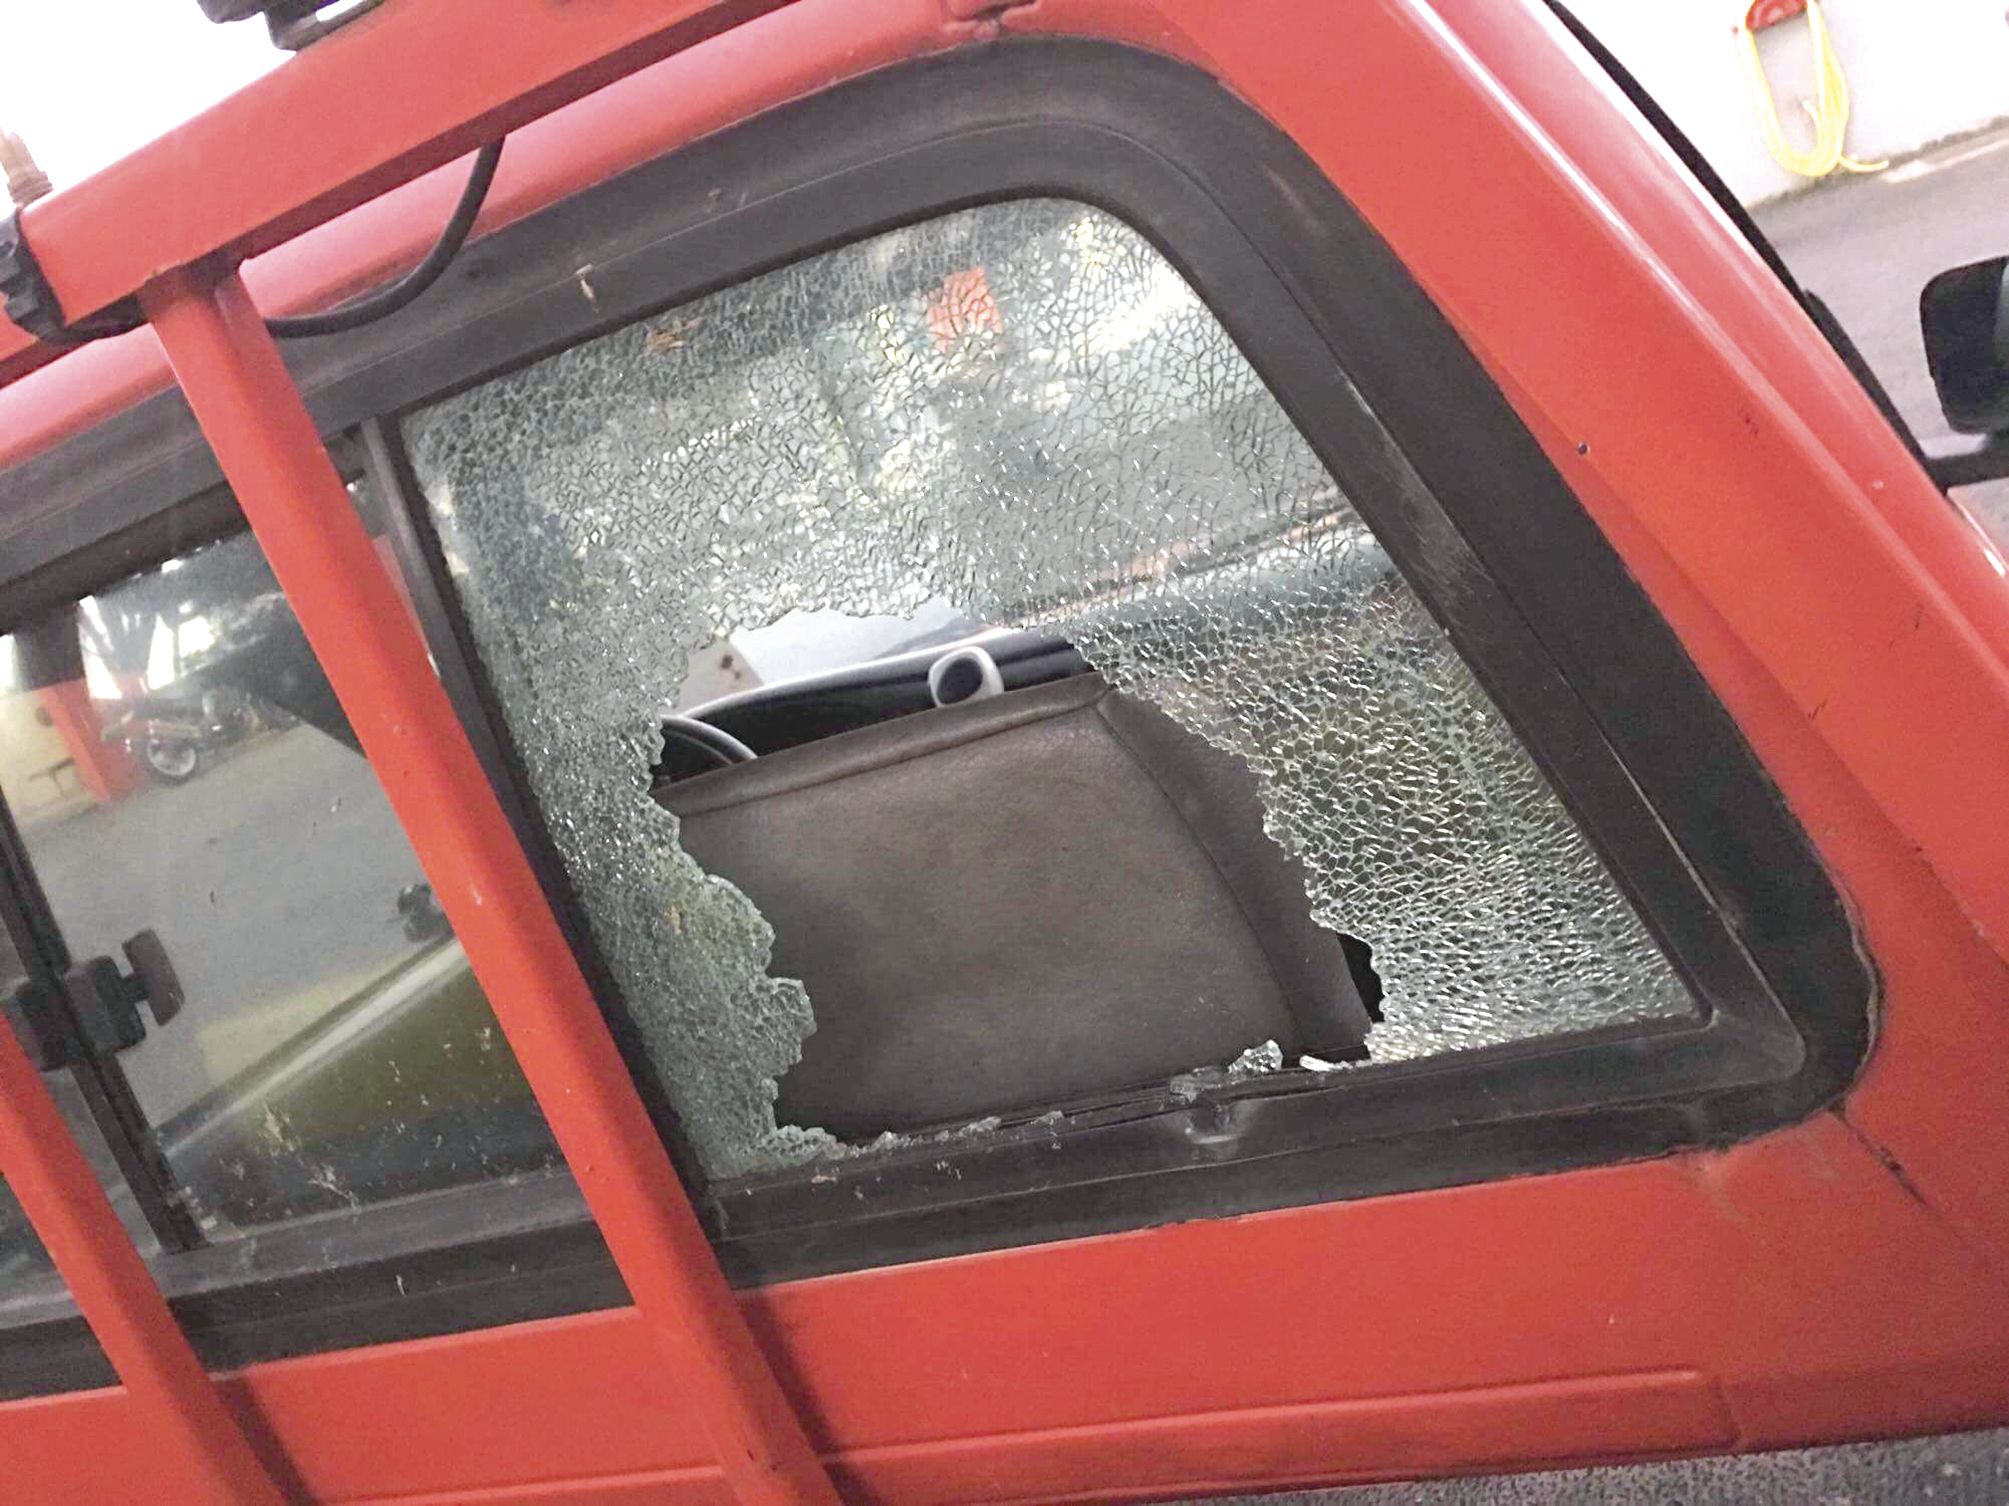 Toutes les vitres du véhicule ont explosé sous les coups et les jets de pierre.  photo DR